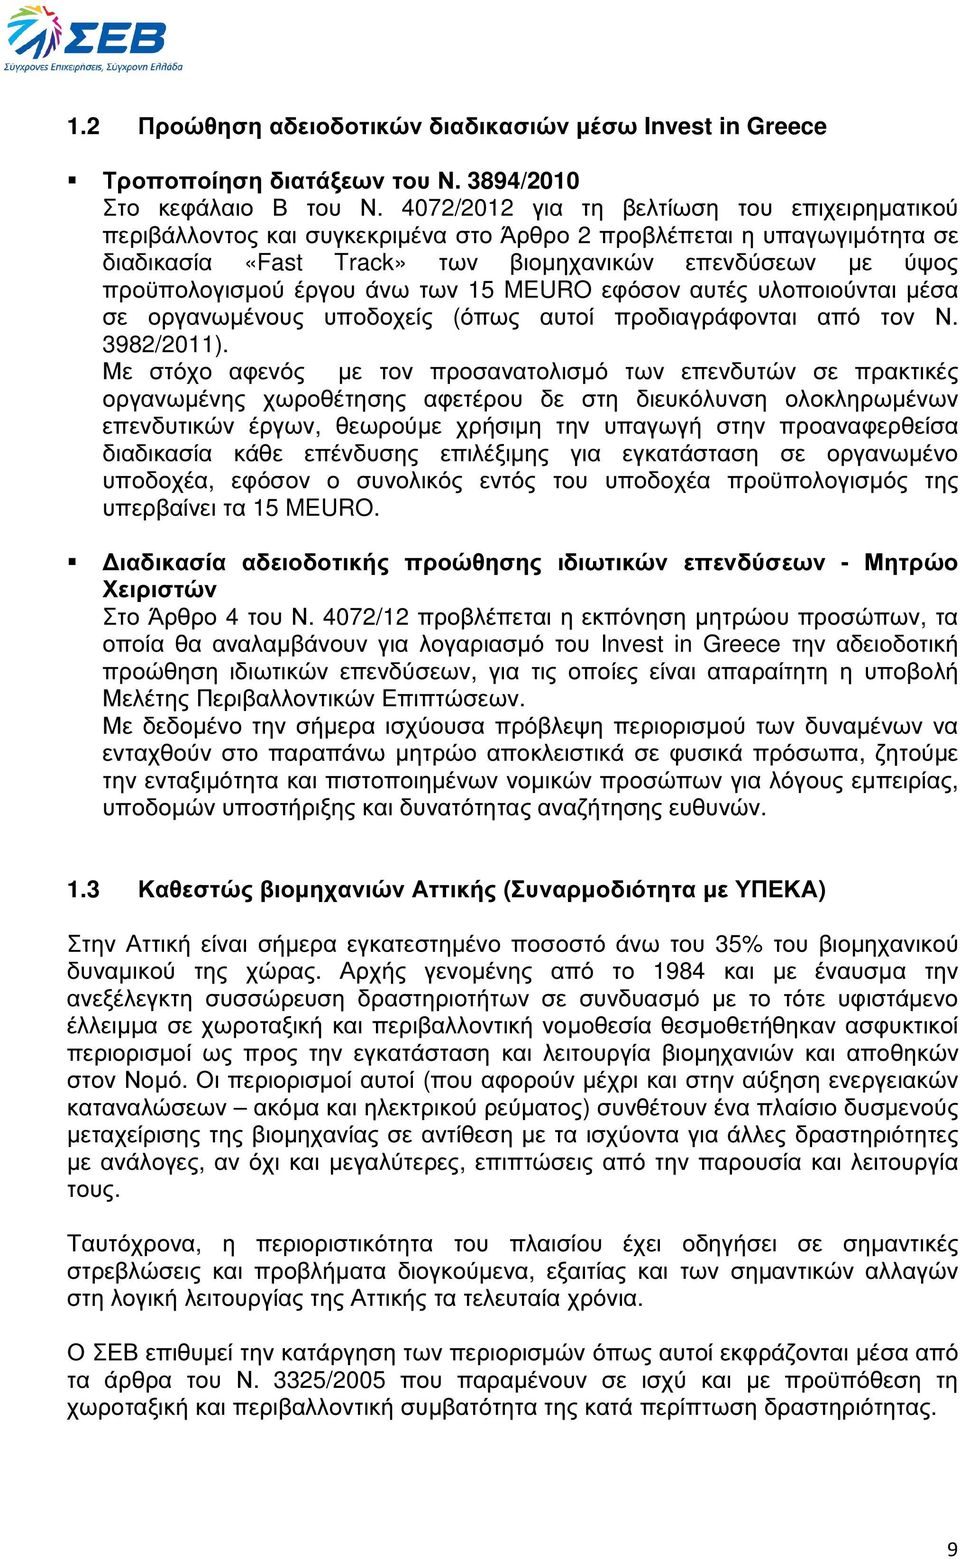 έργου άνω των 15 MEURO εφόσον αυτές υλοποιούνται µέσα σε οργανωµένους υποδοχείς (όπως αυτοί προδιαγράφονται από τον Ν. 3982/2011).